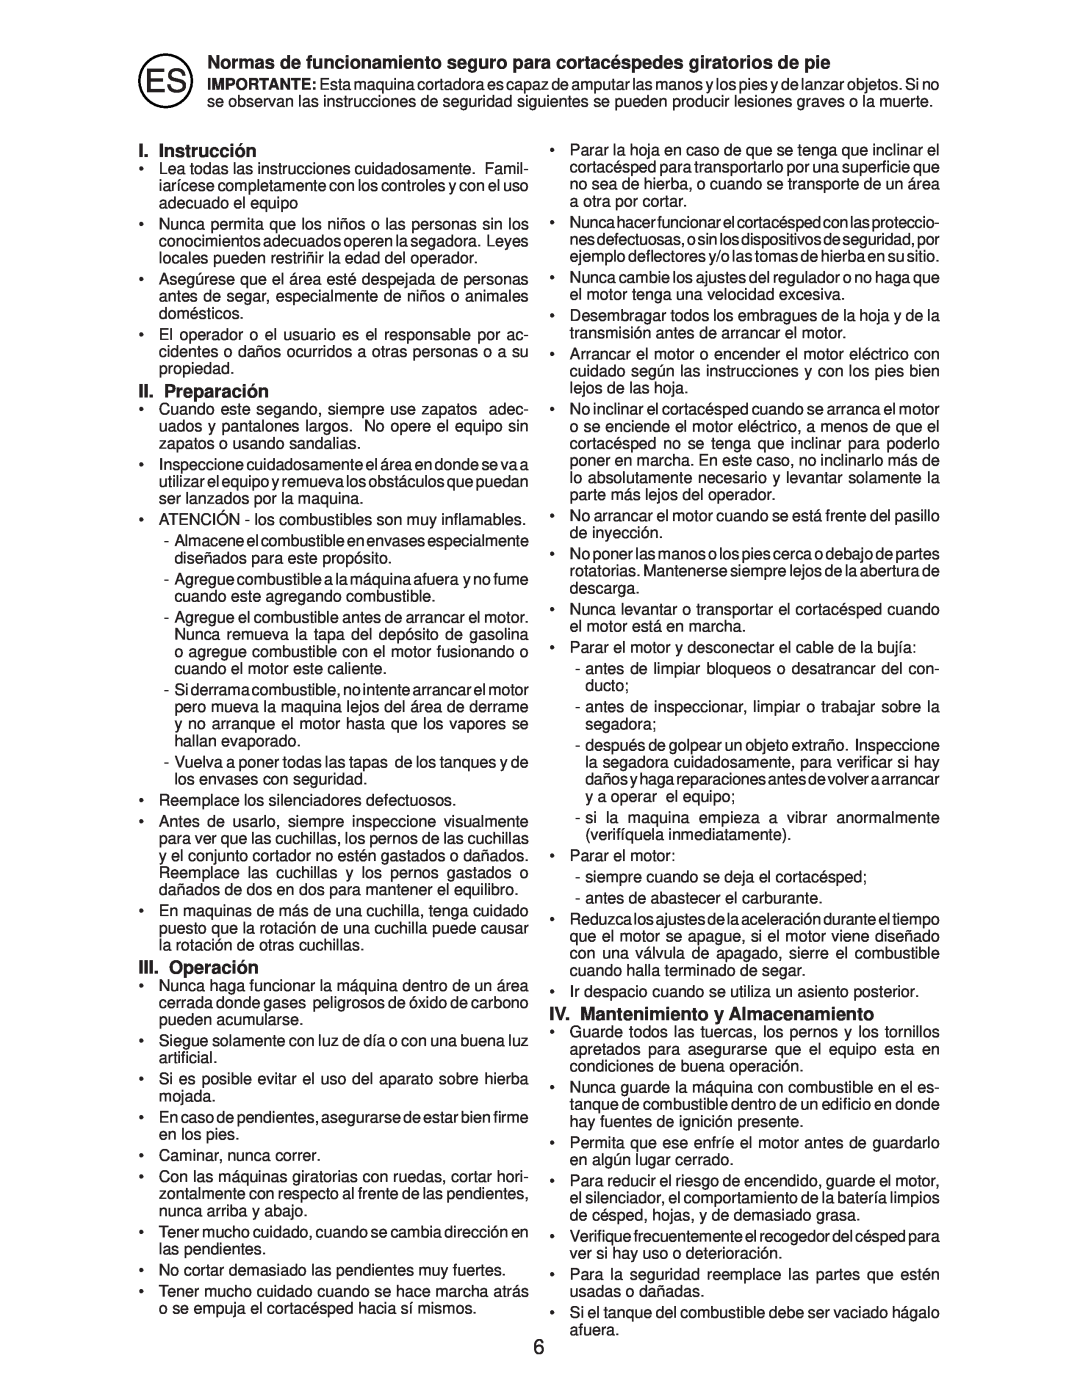 Husqvarna R145SV instruction manual I. Instrucción, II. Preparación, III. Operación, IV. Mantenimiento y Almacenamiento 